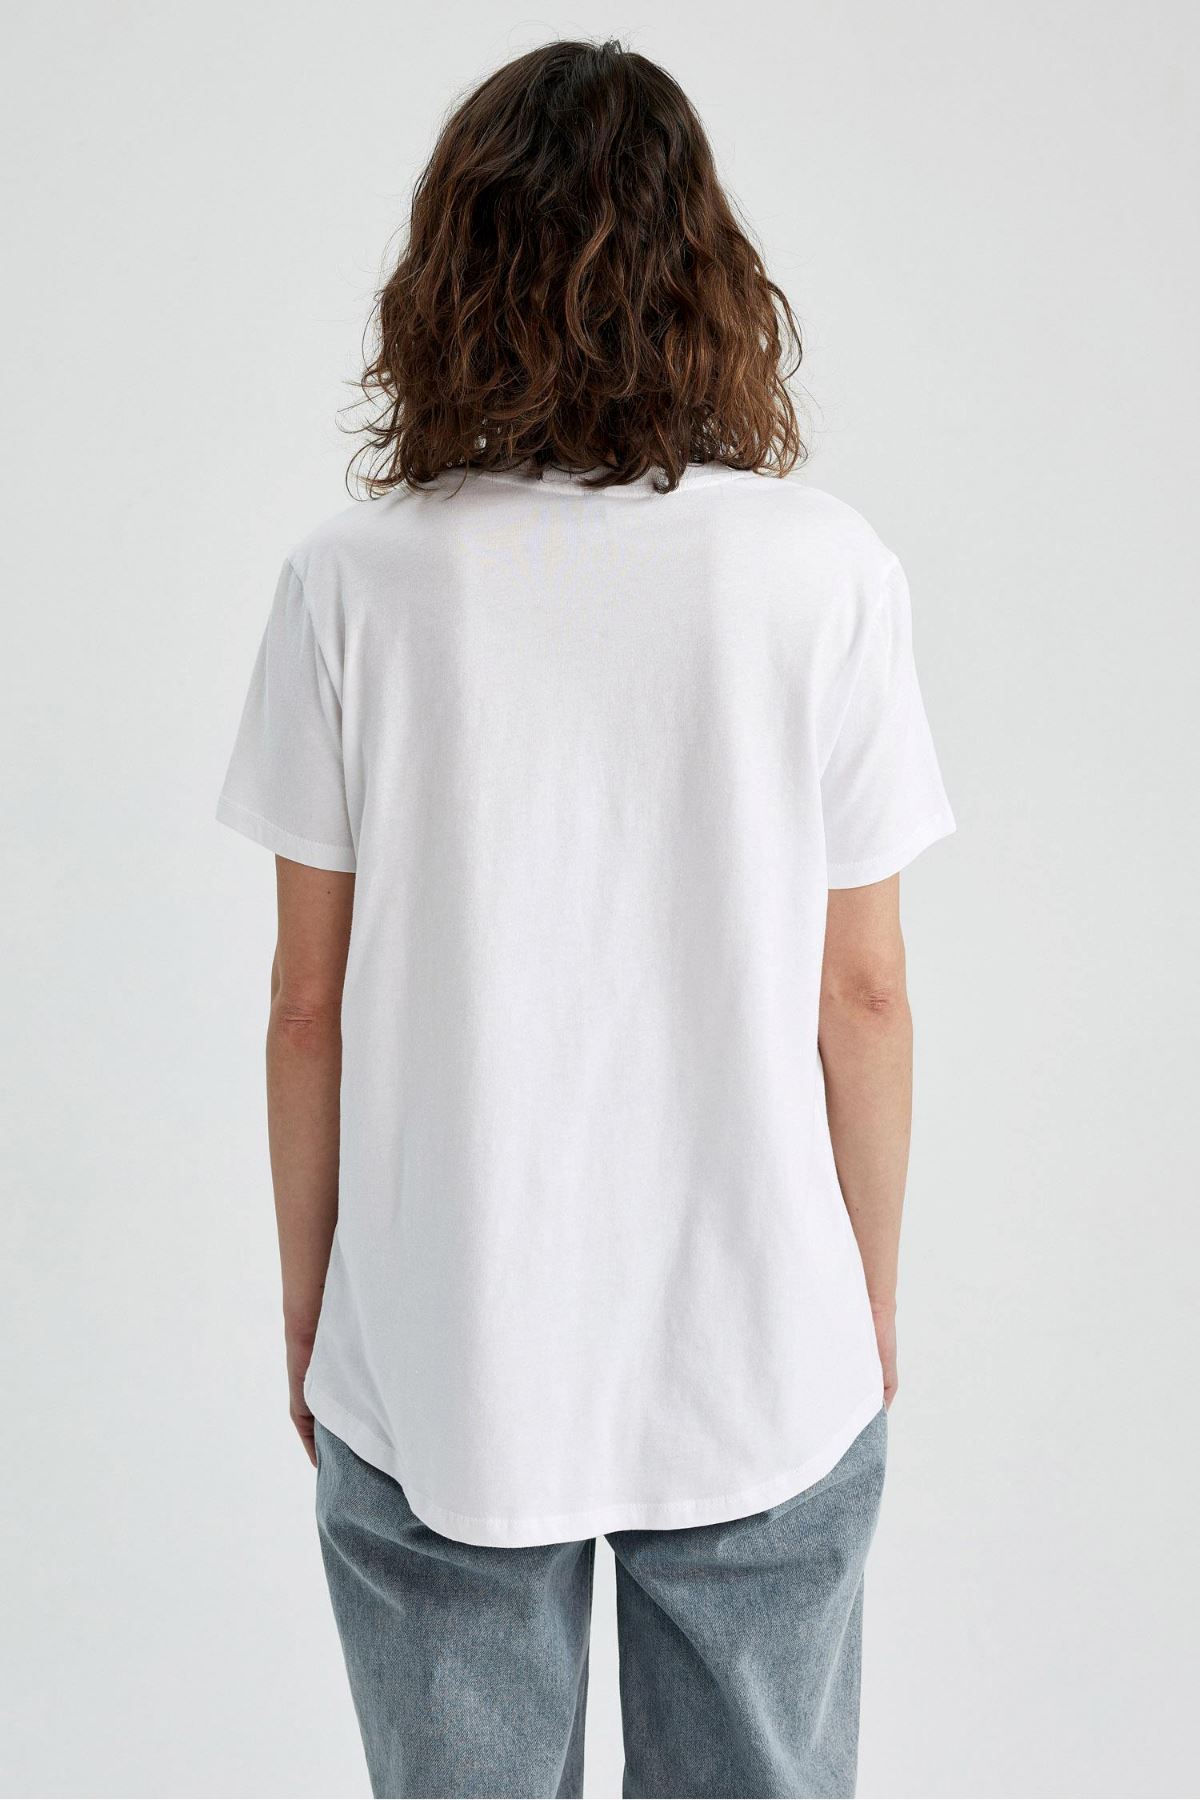 Defacto Kadın Beyaz Tişört - T5097AZ/WT34